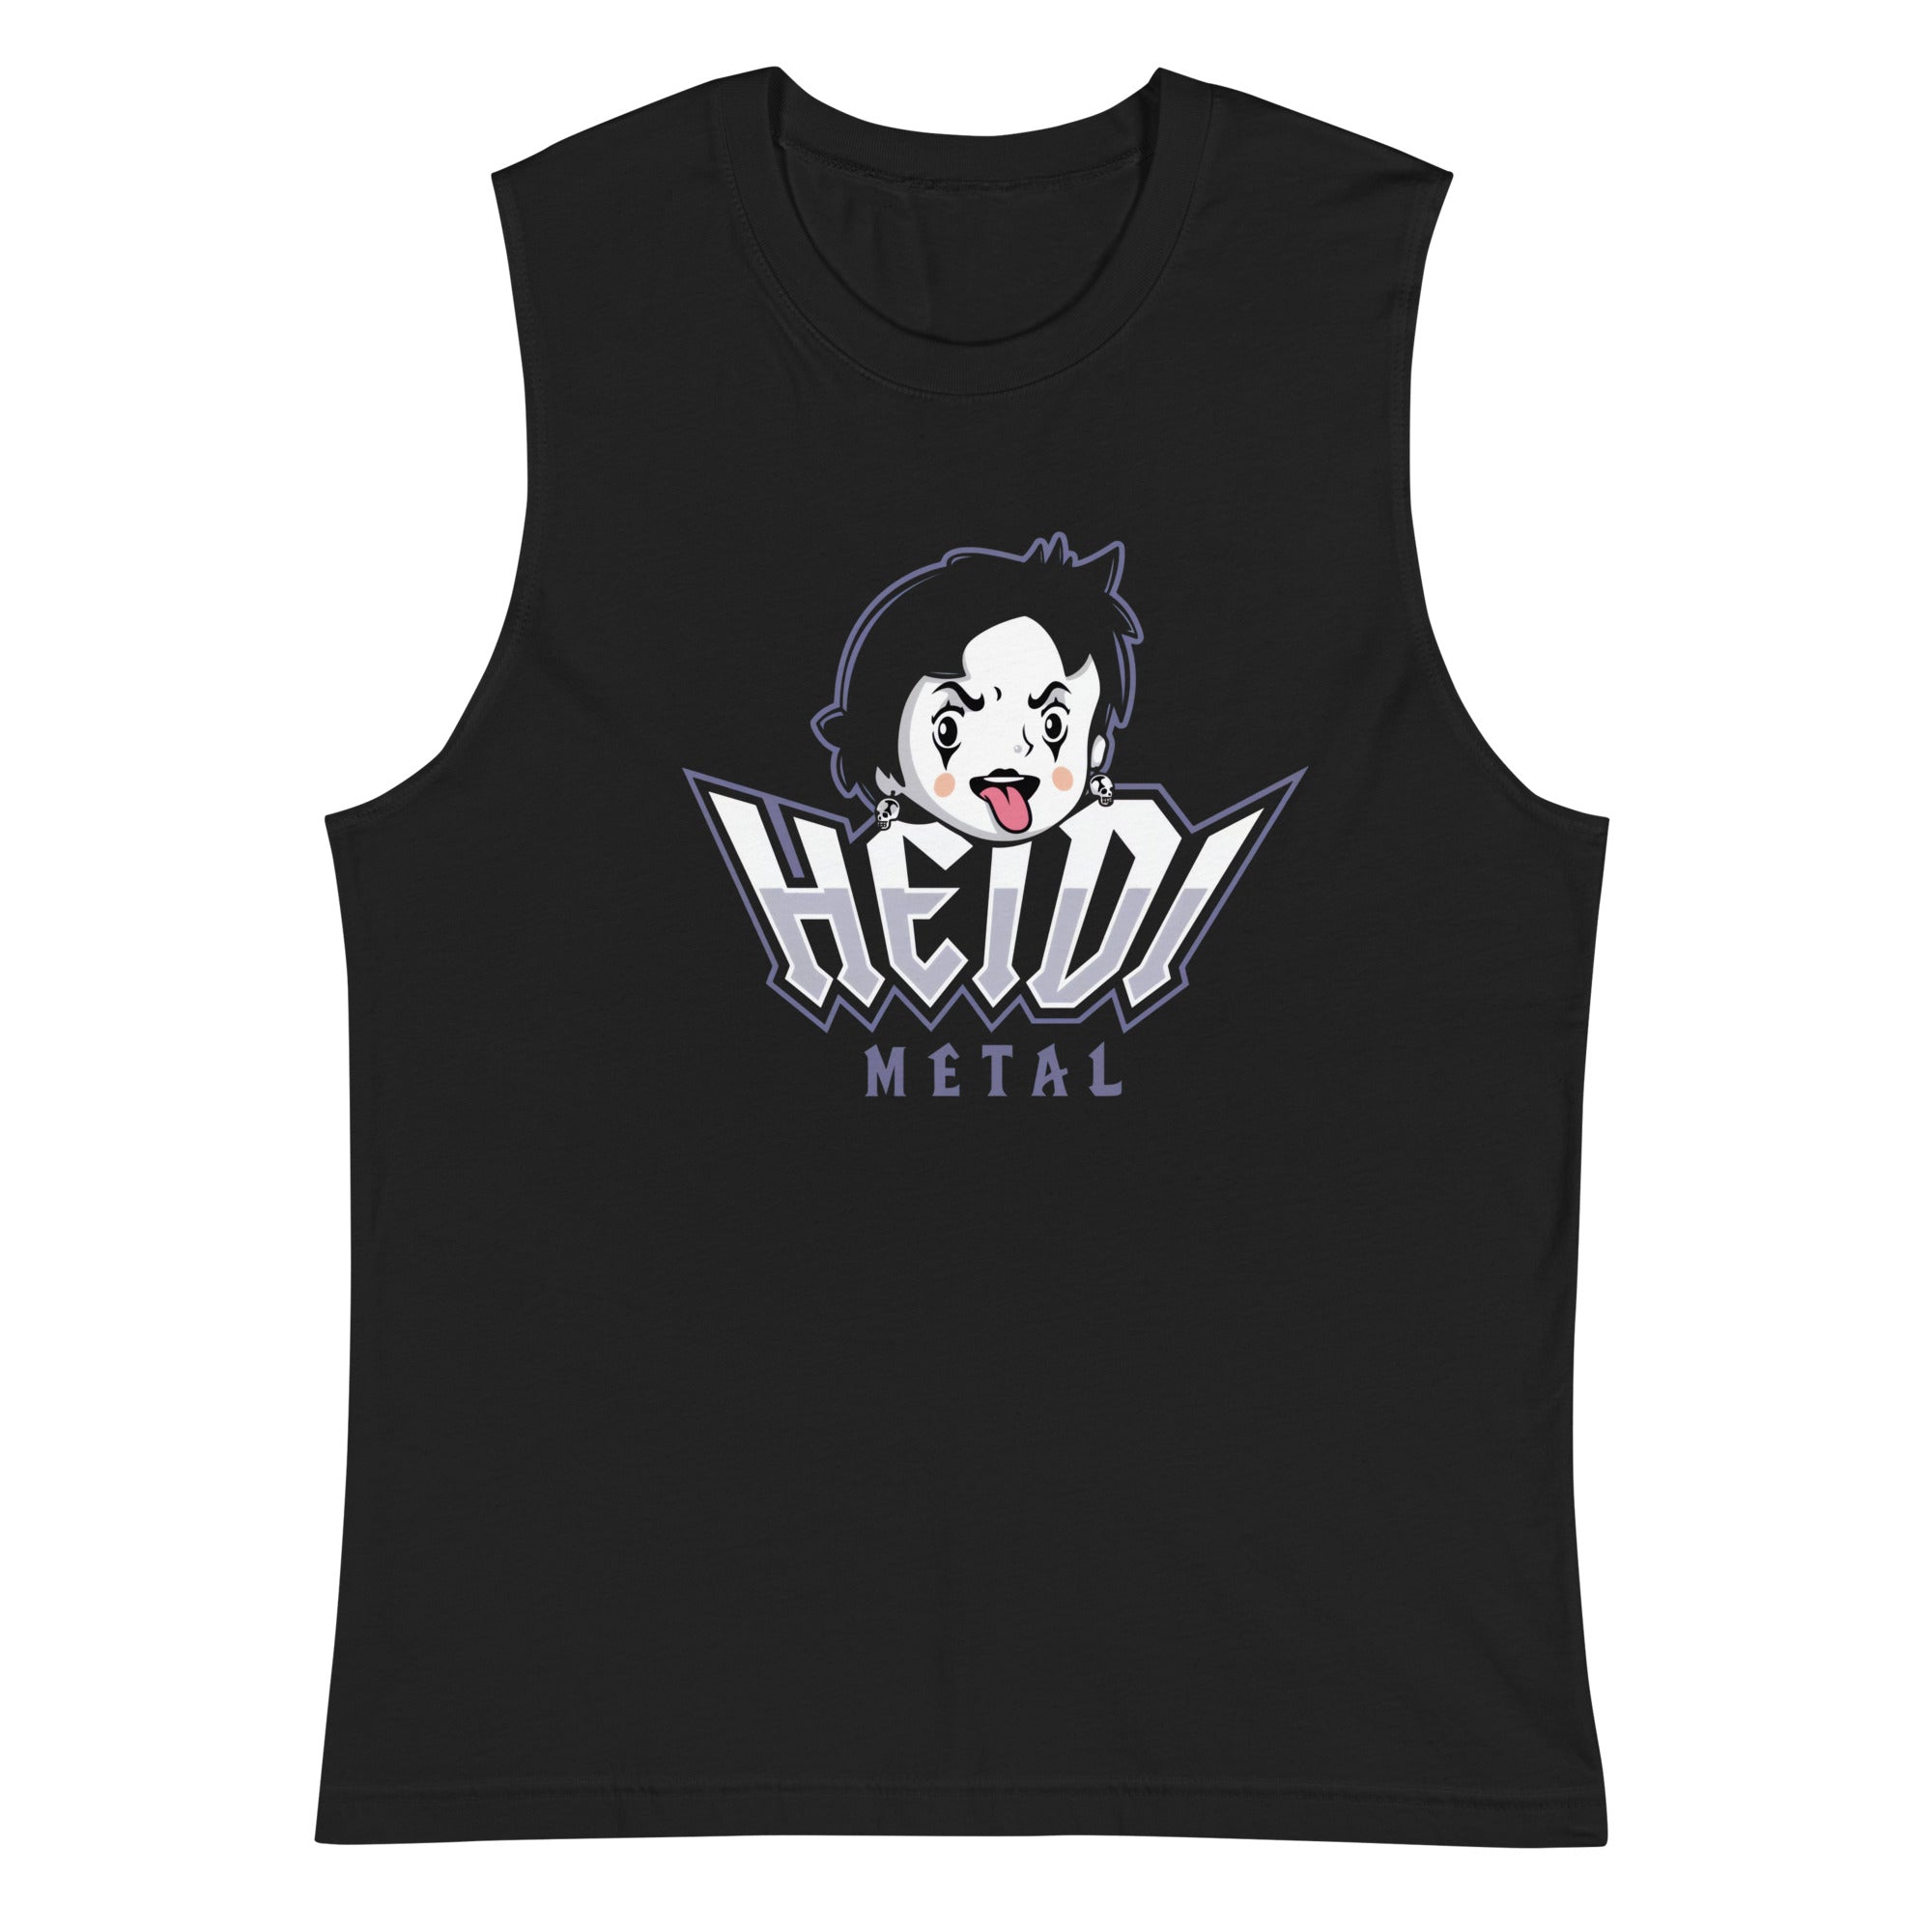 Camiseta sin Mangas de Heidi Metal, Nuestras Camisetas son unisex disponibles en la mejor tienda online, compra ahora en Superstar!